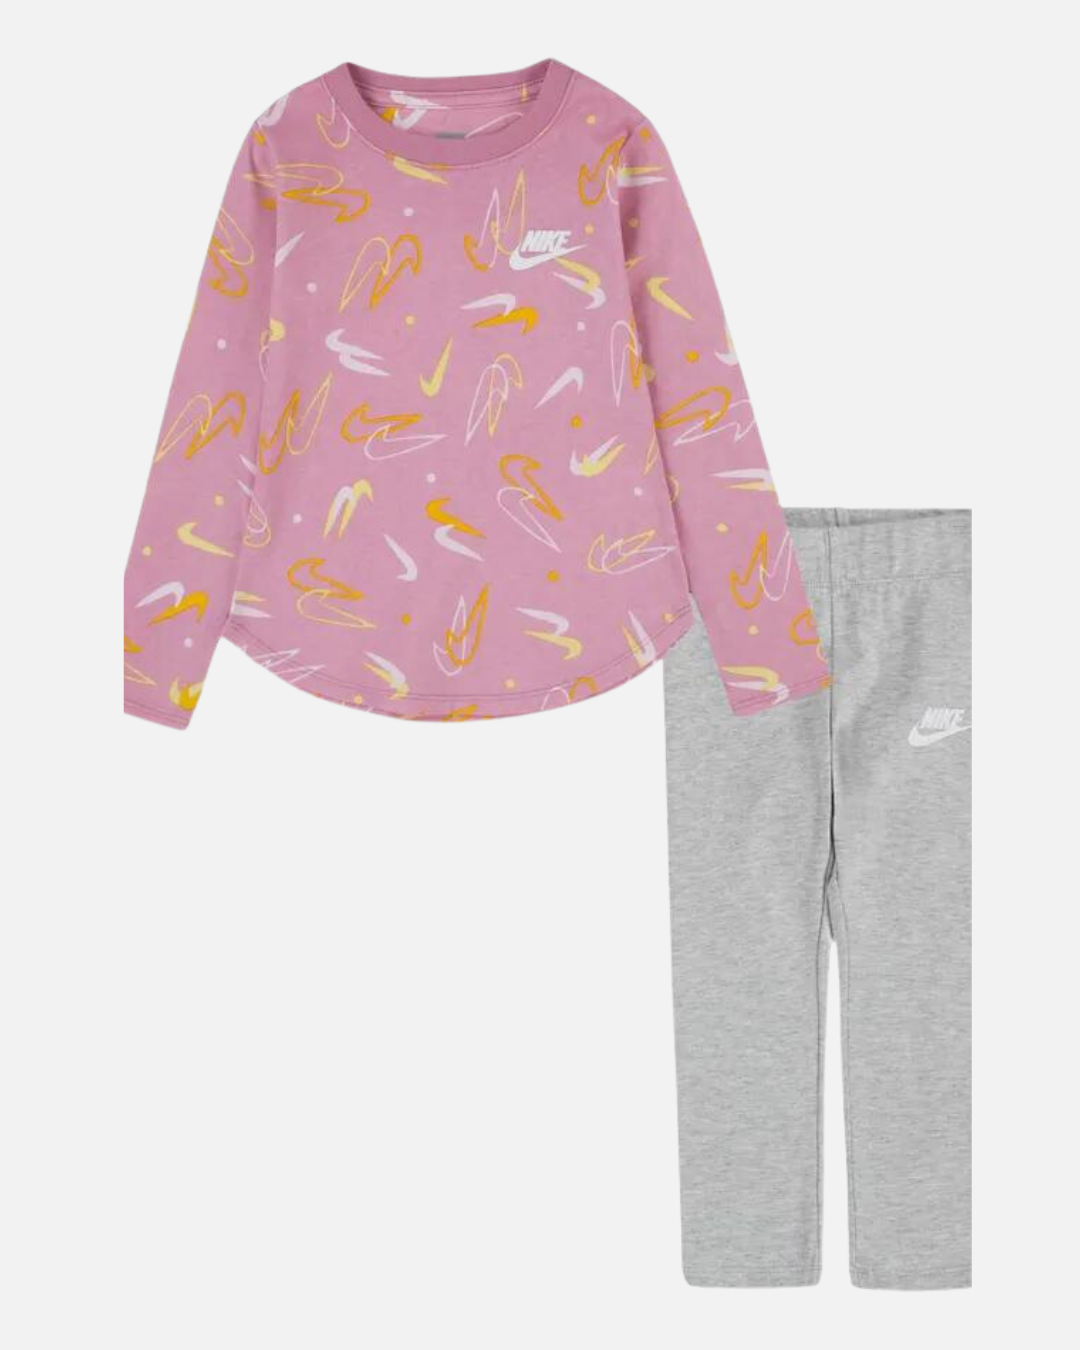 Nike Kids T-shirt/Leggings Set - Pink/Grey